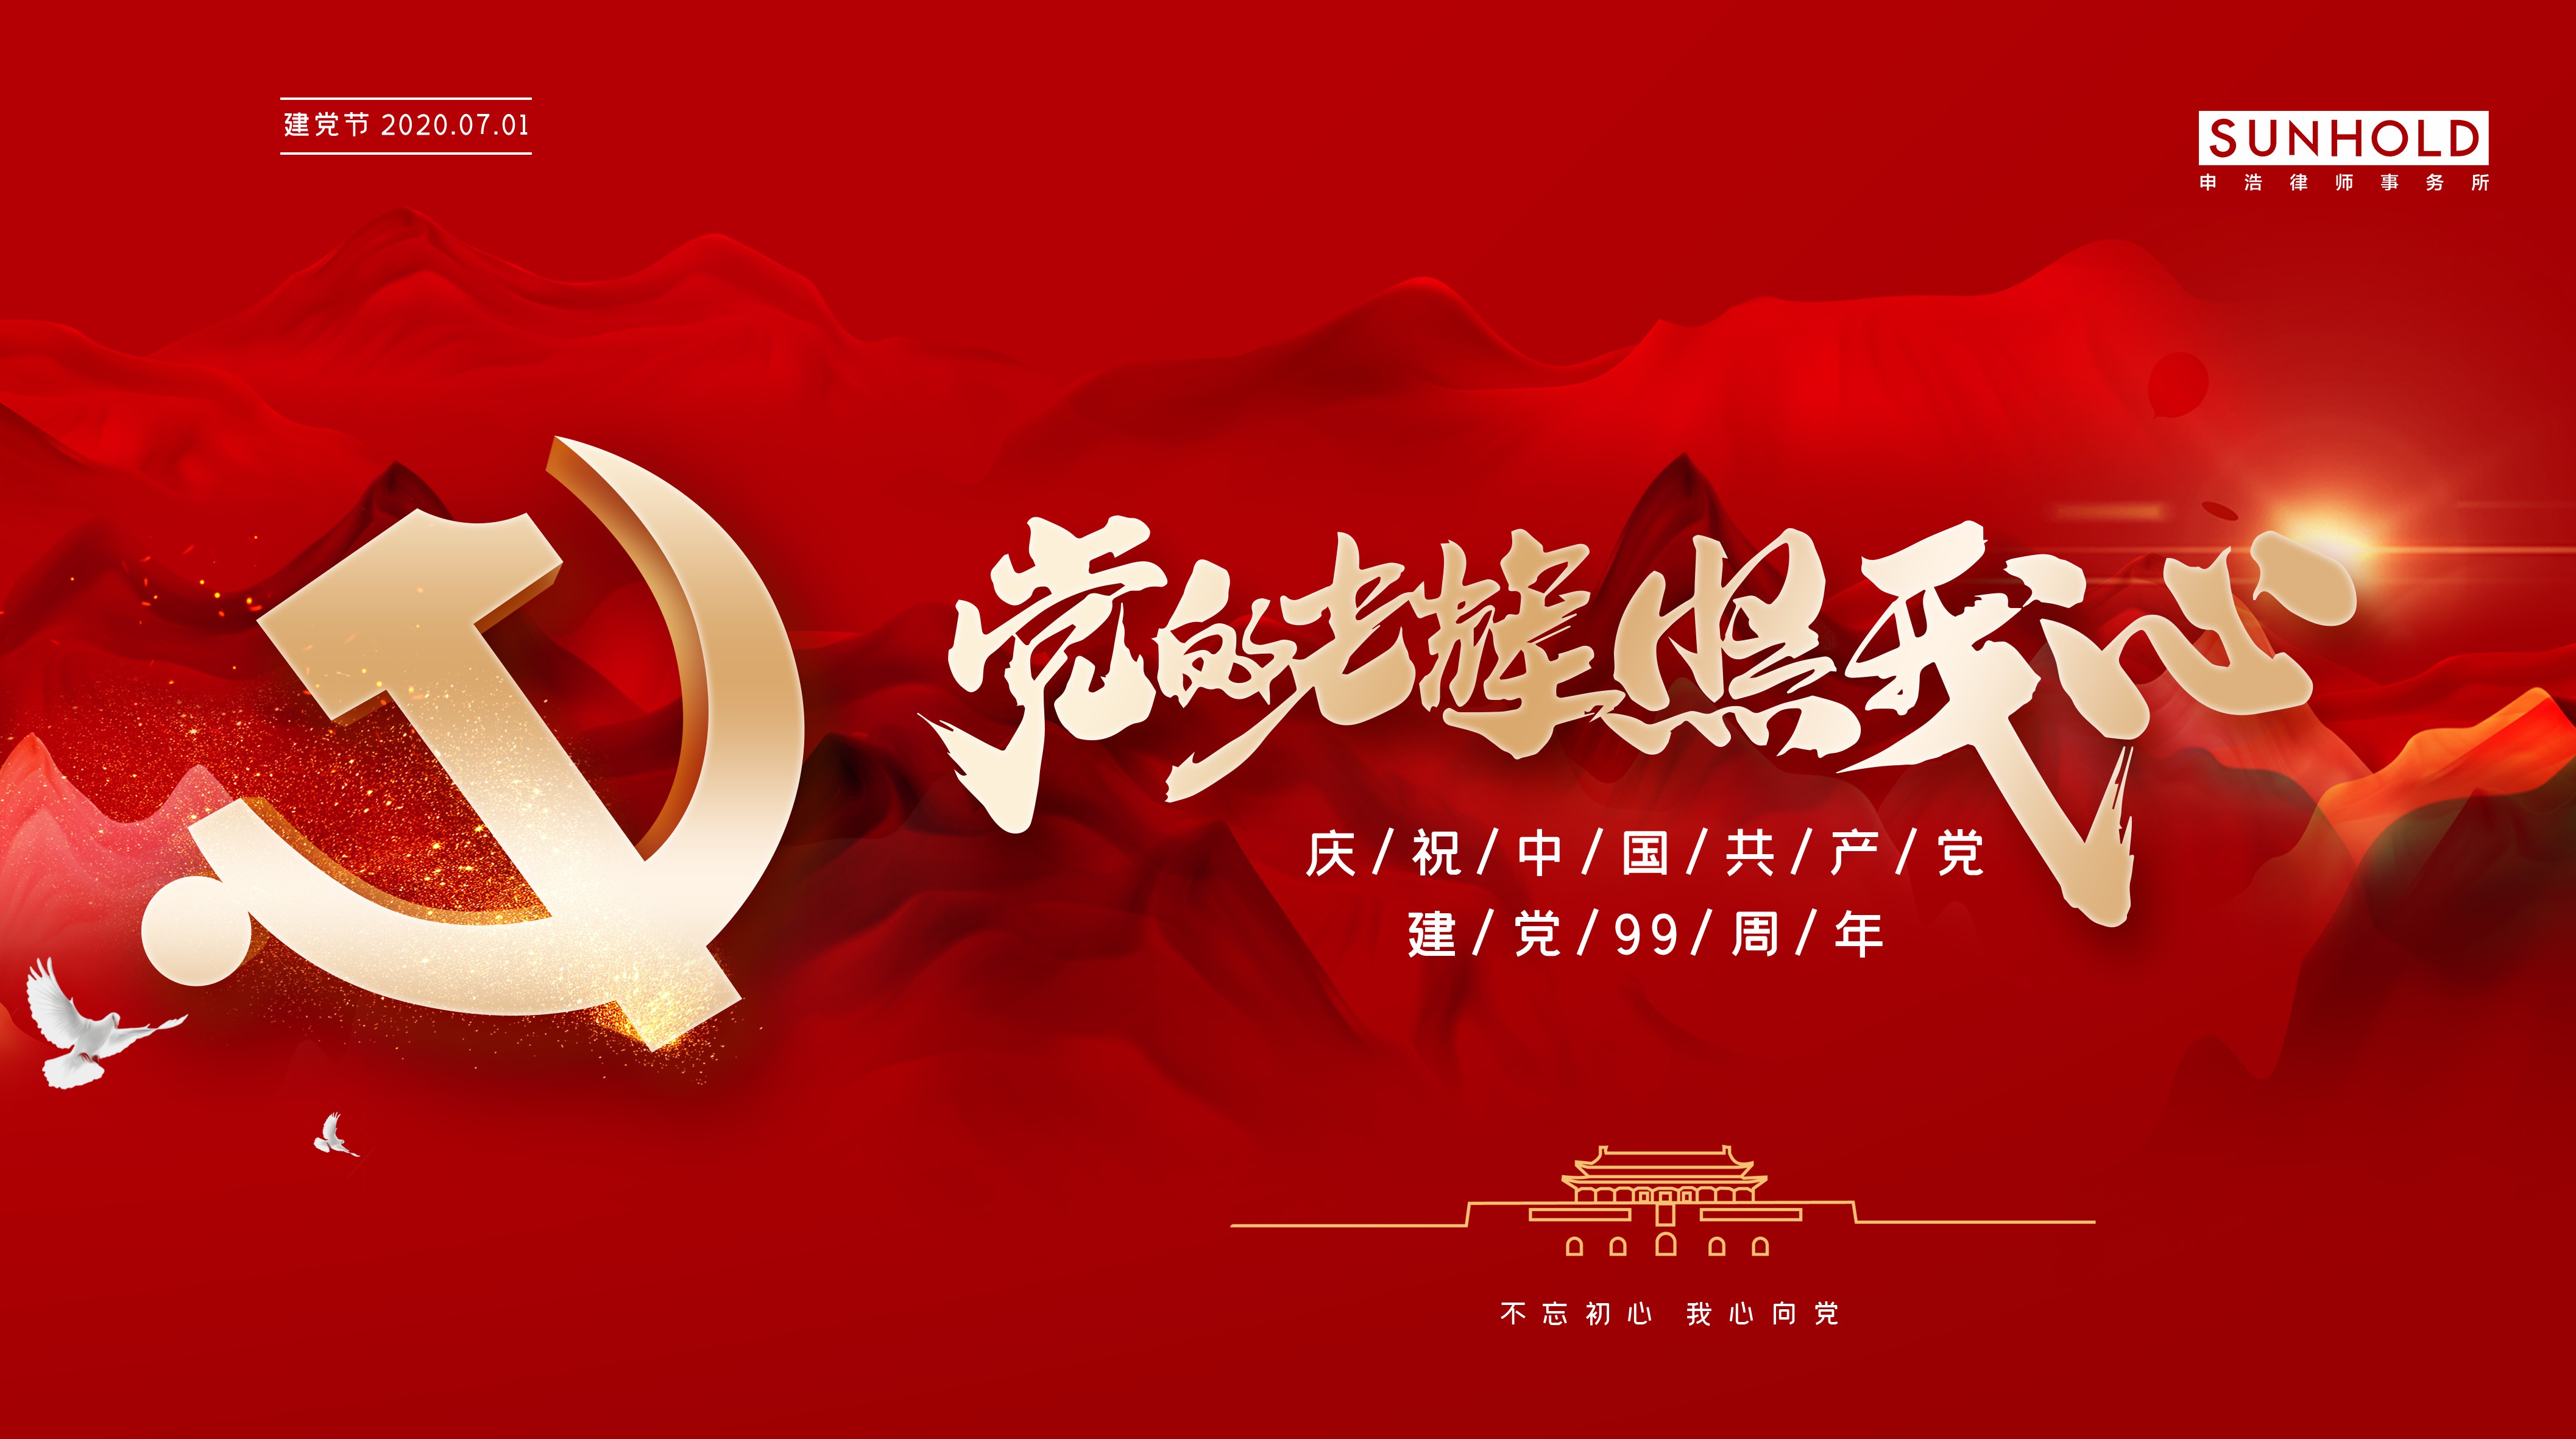 七一特辑 | 申浩党总支组织开展系列活动，庆祝建党99周年